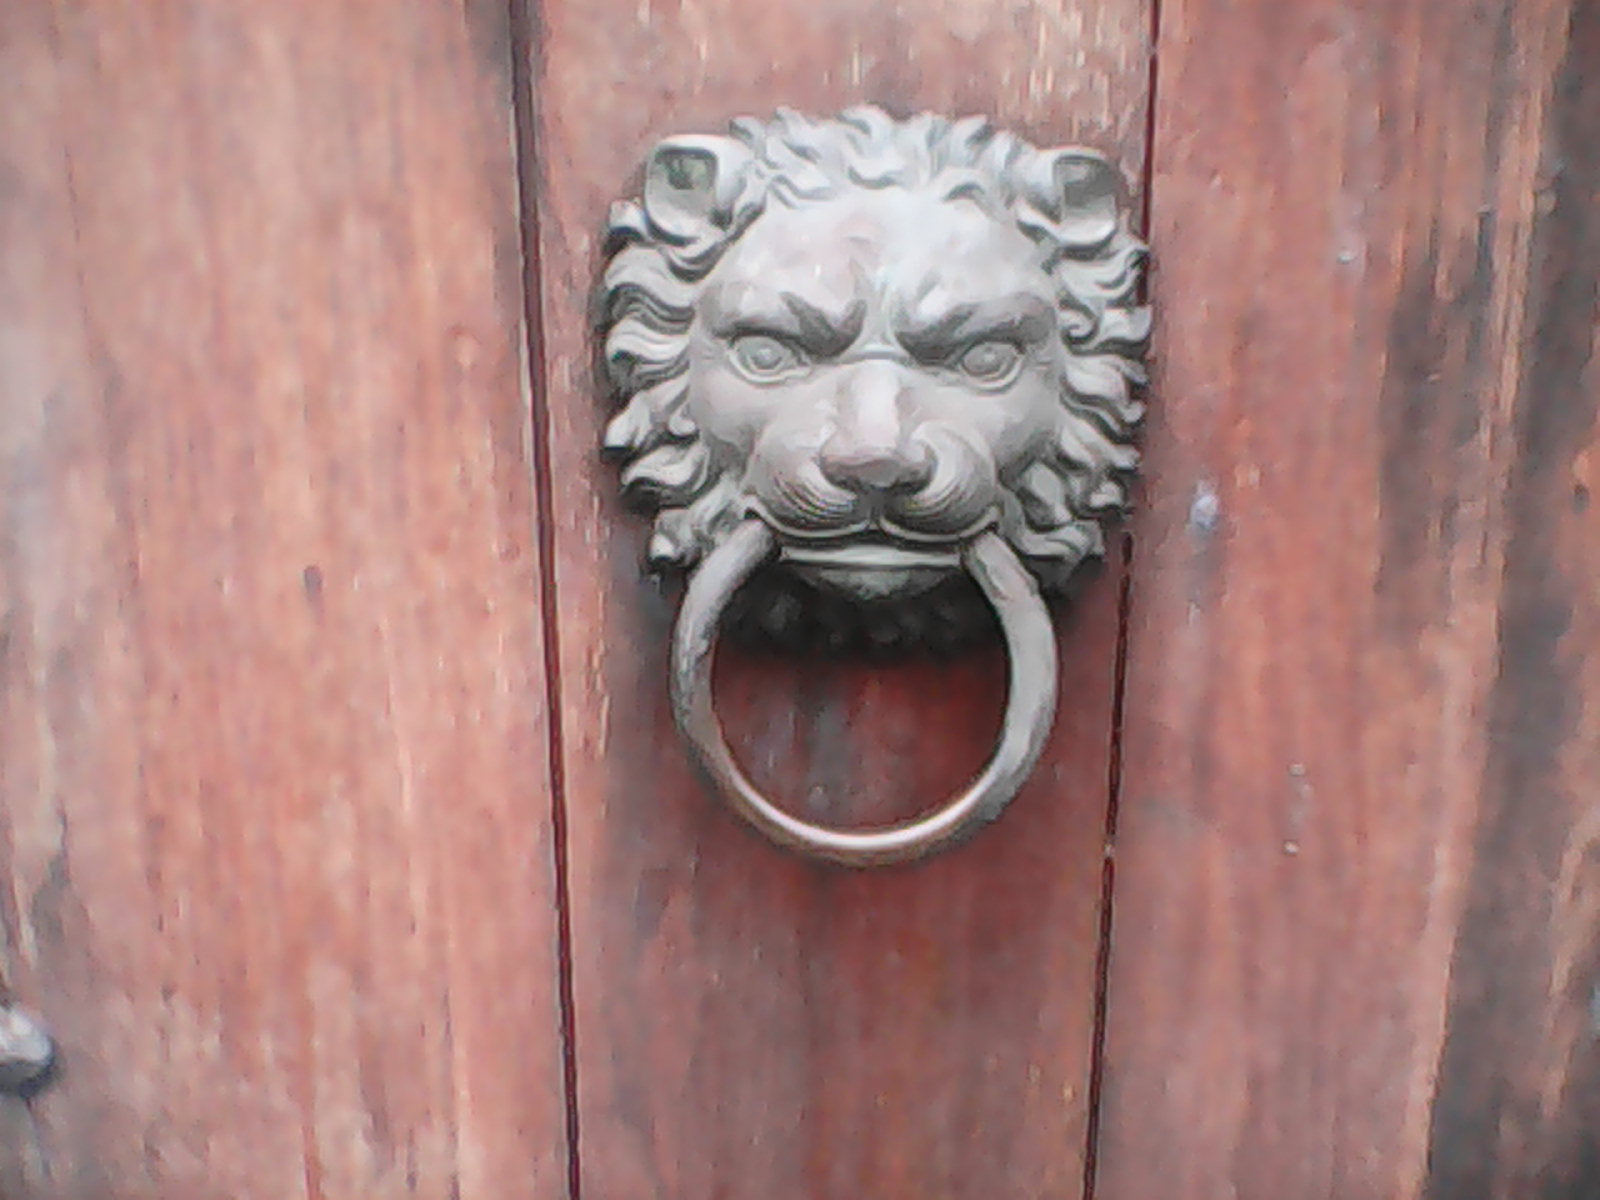 A lionhead guarding a door.